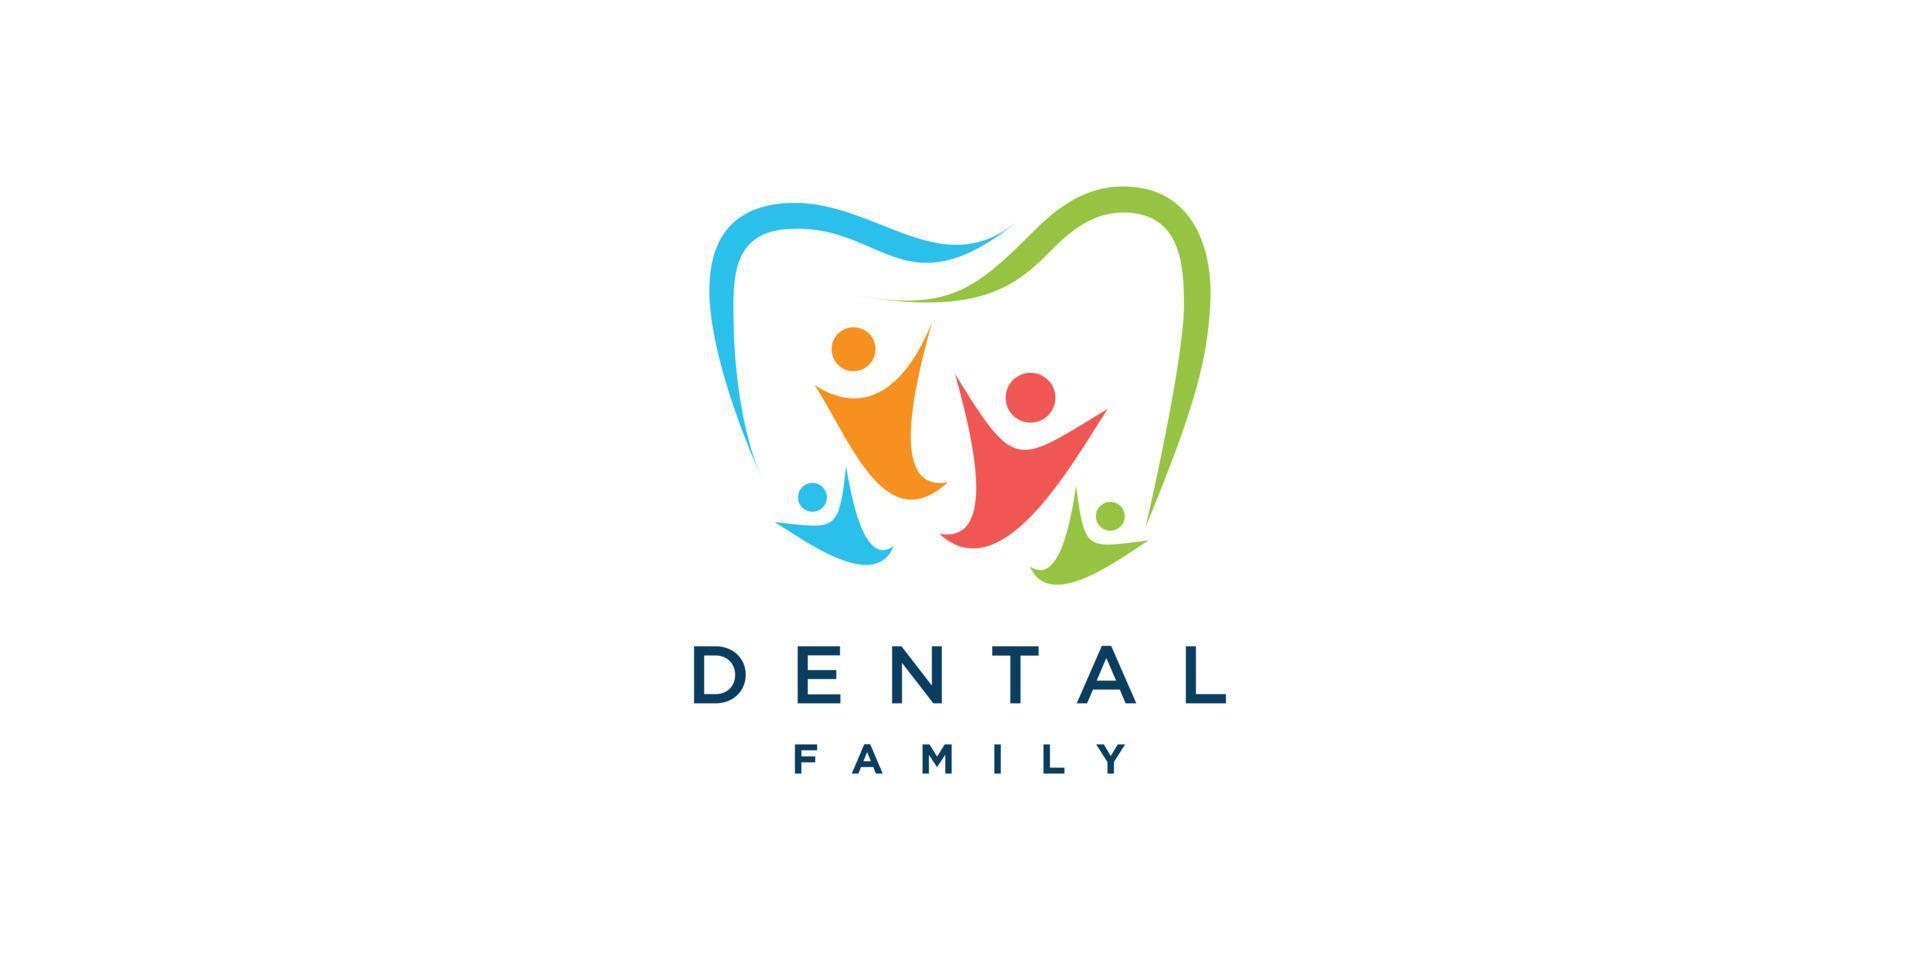 logo dentaire familial avec vecteur premium de style abstrait humain partie 2